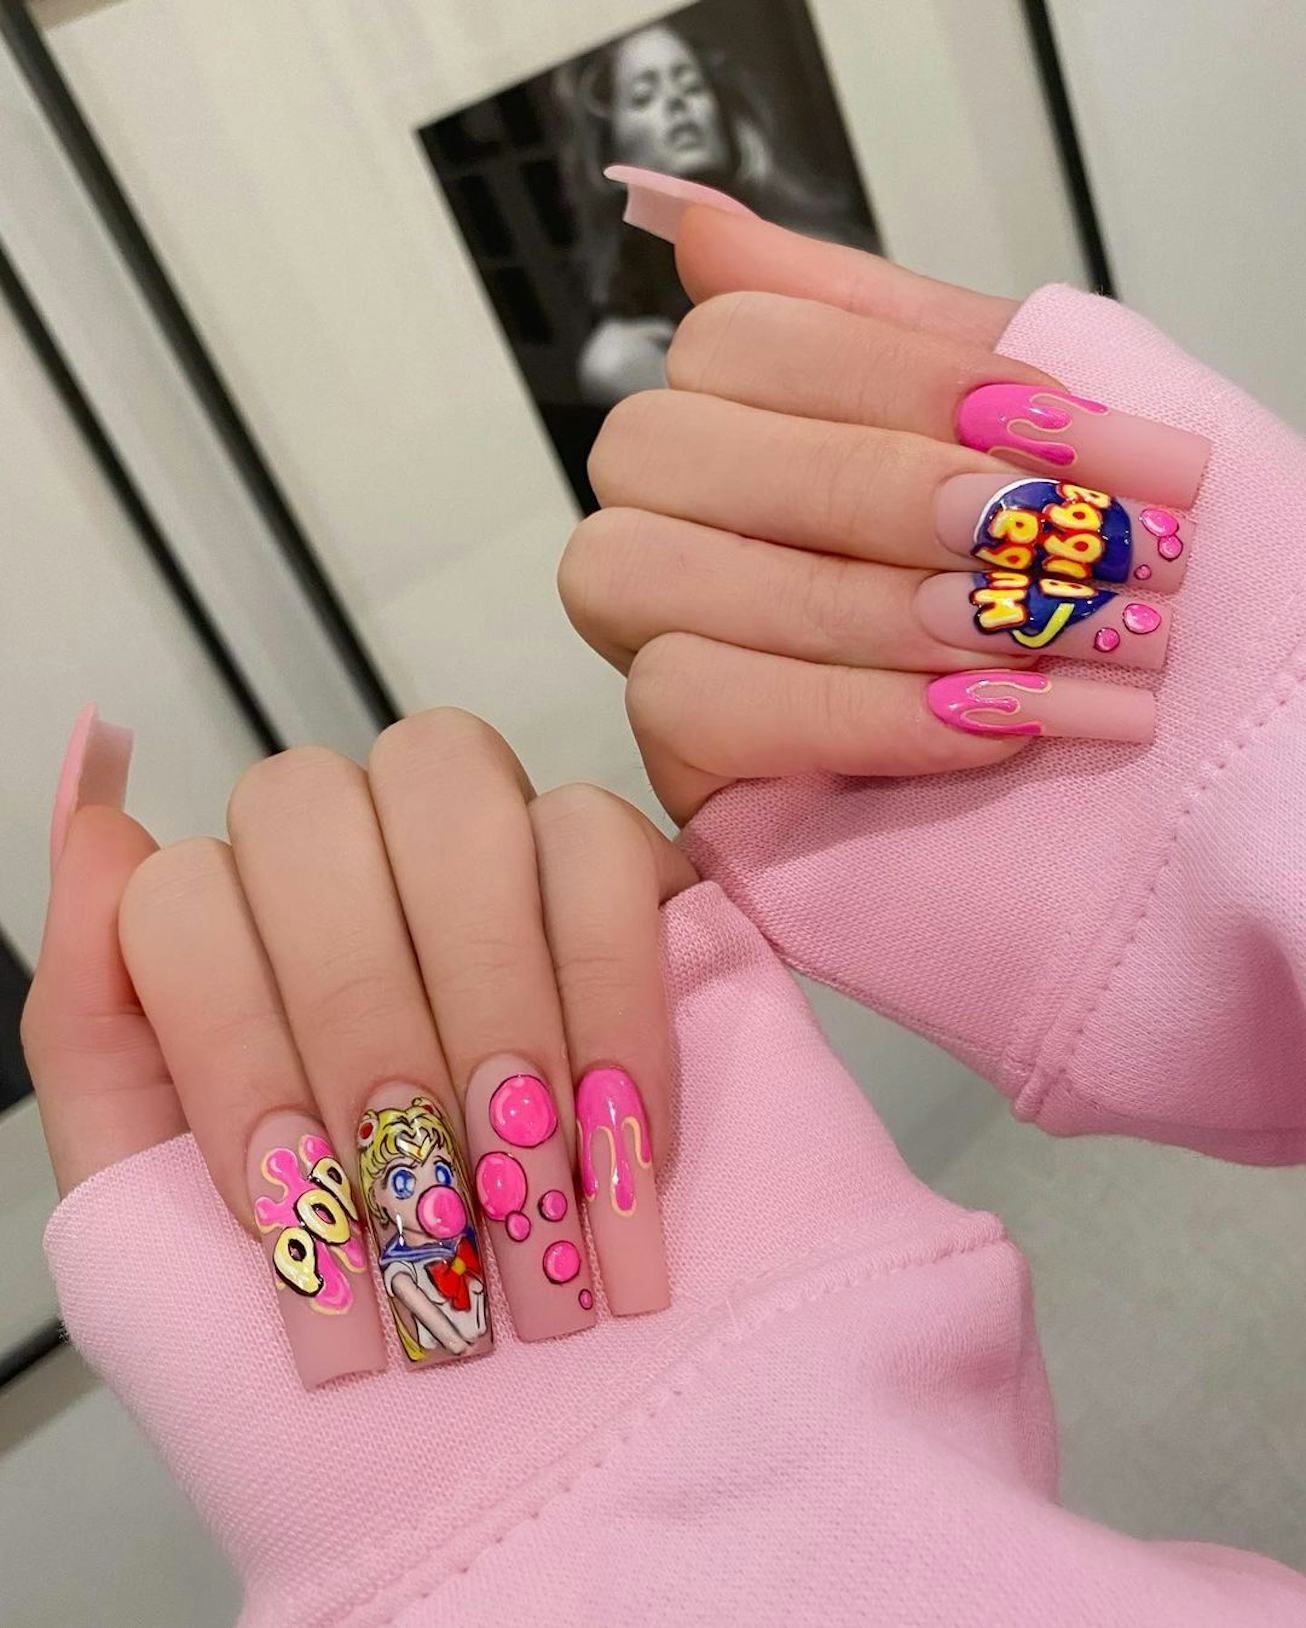 Sailor Moon inspired nail art